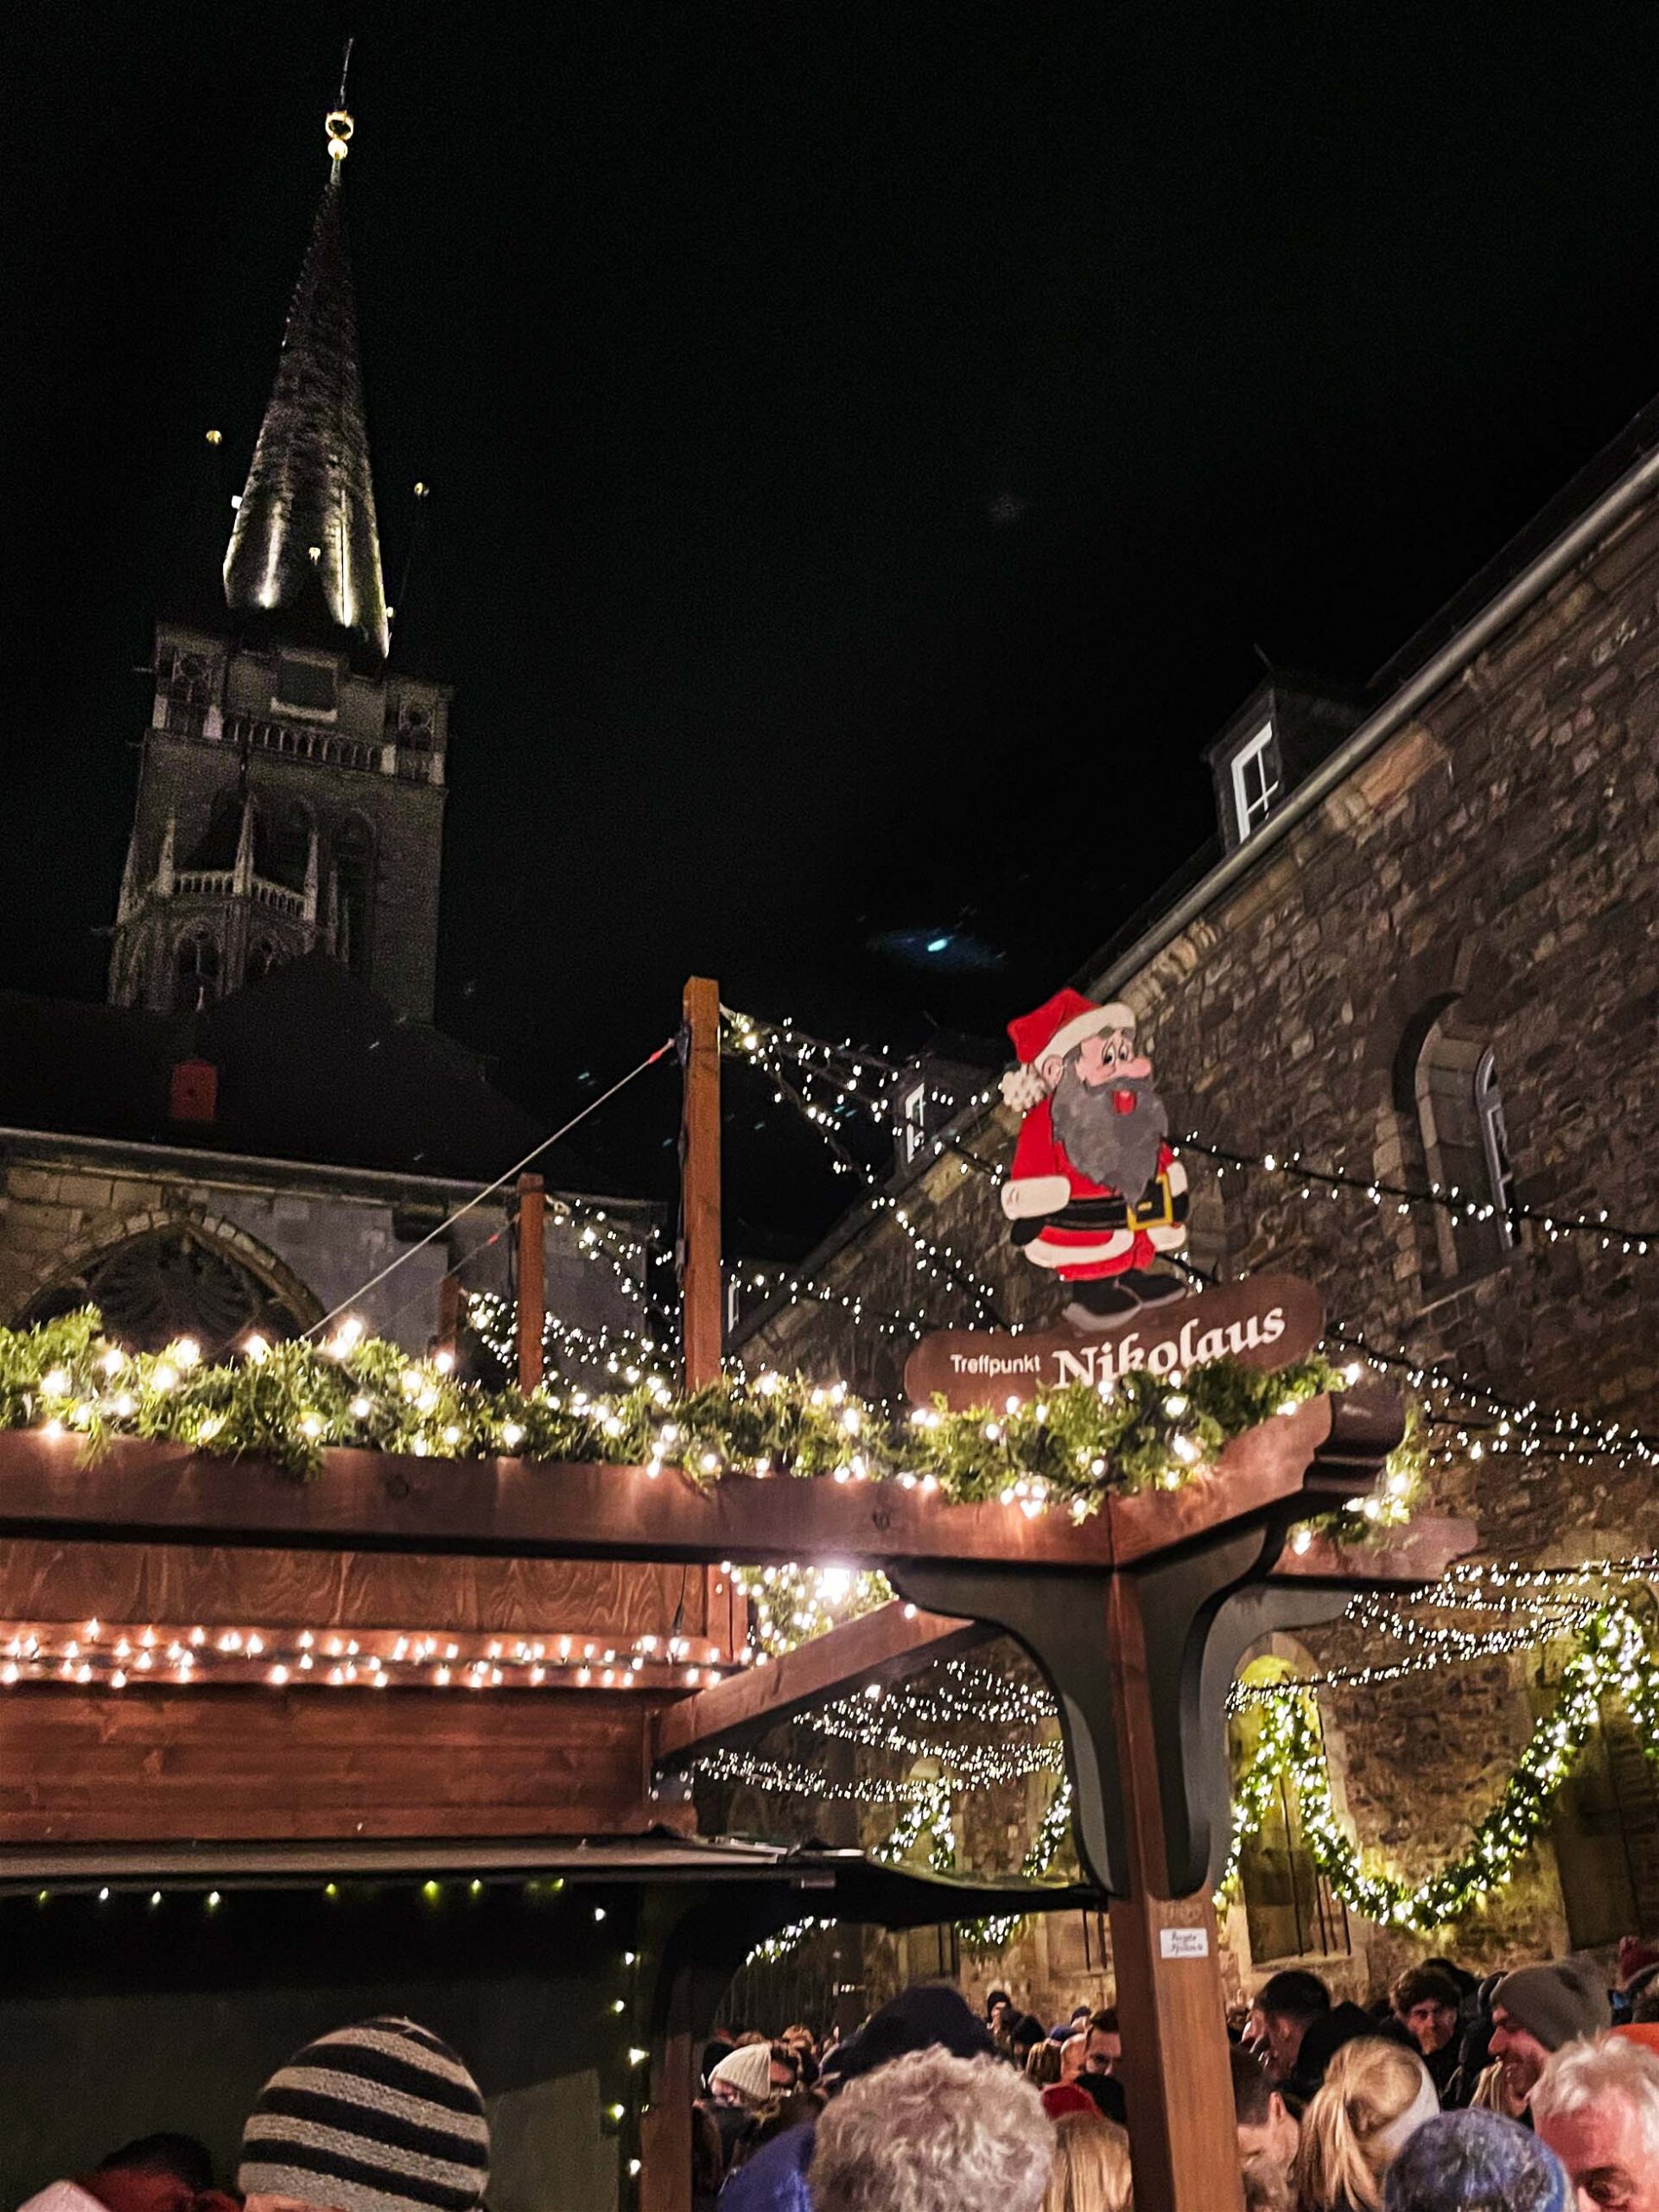 Weihnachtsmarkt Aachen. Personen und Weihnachtsstände sind zu erkennen. Ein Schild mit Treffpunkt Nikolaus ist dominiert das Bild.